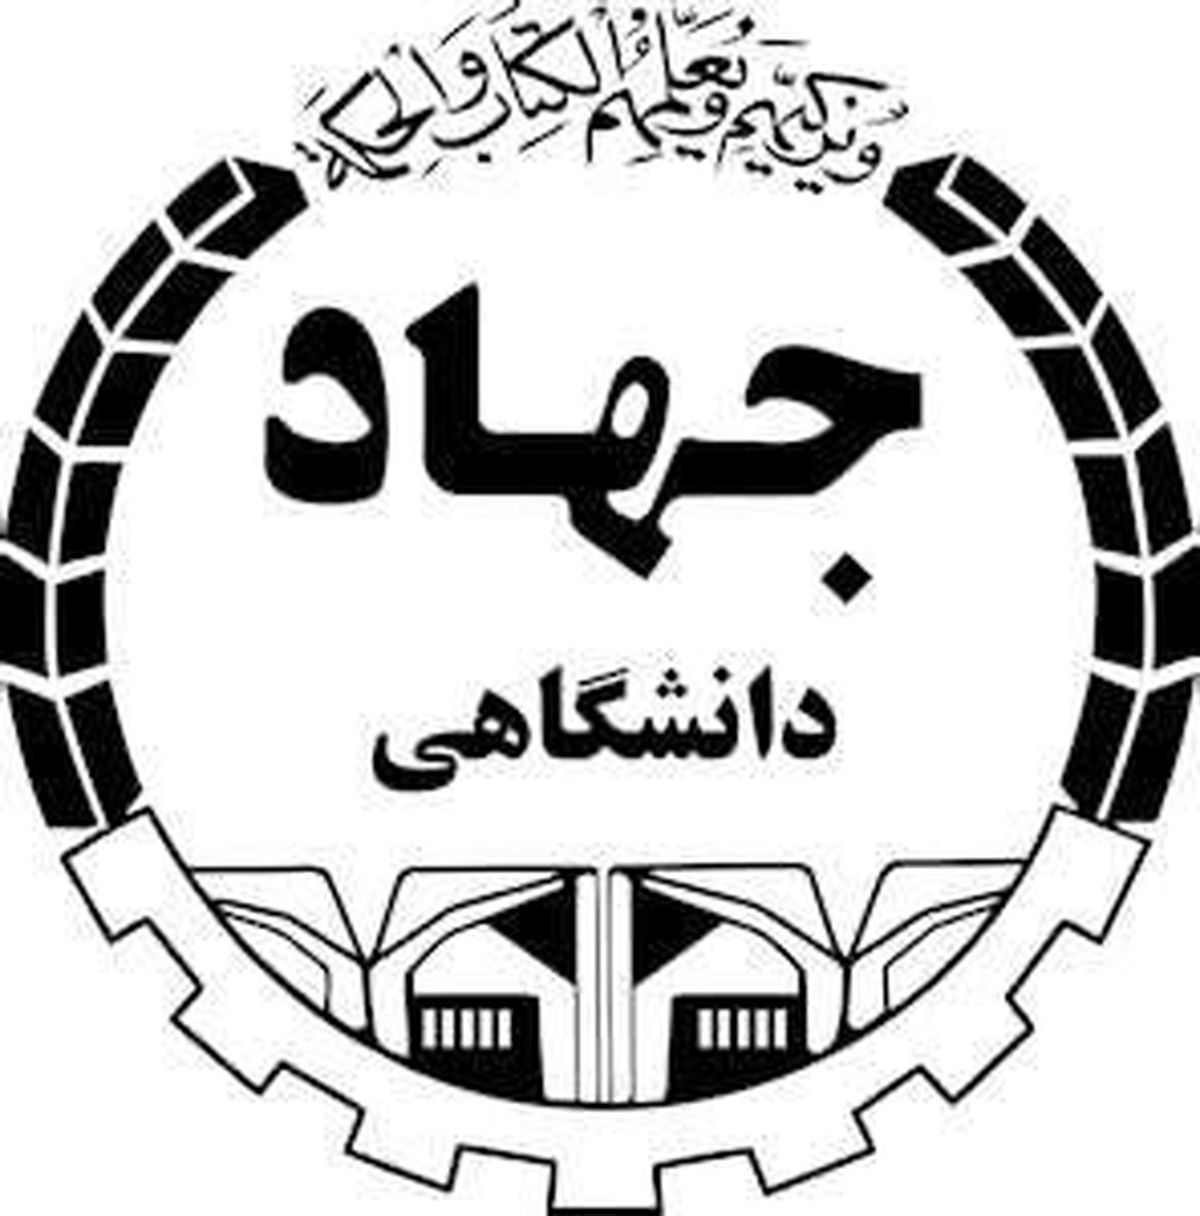 اعضای جهاد دانشگاهی: مصاحبه اخیر معاون فرهنگی جهاد اقدام علیه امنیت ملی بود